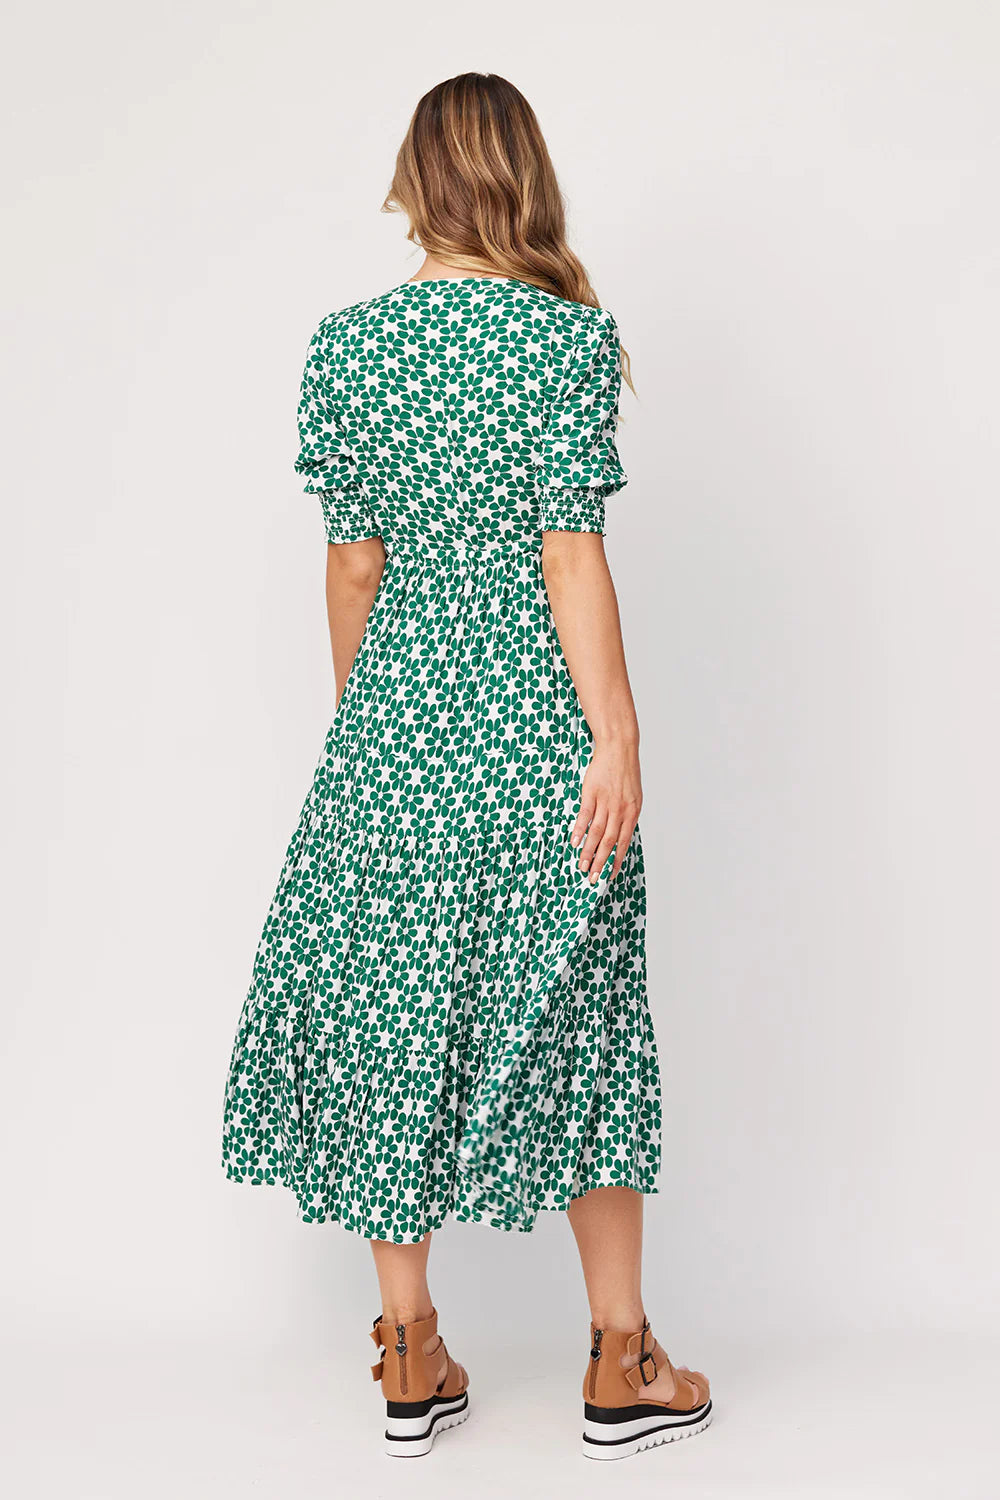 Lemon Tree - Jayda Dress | Green Daisy – Style358